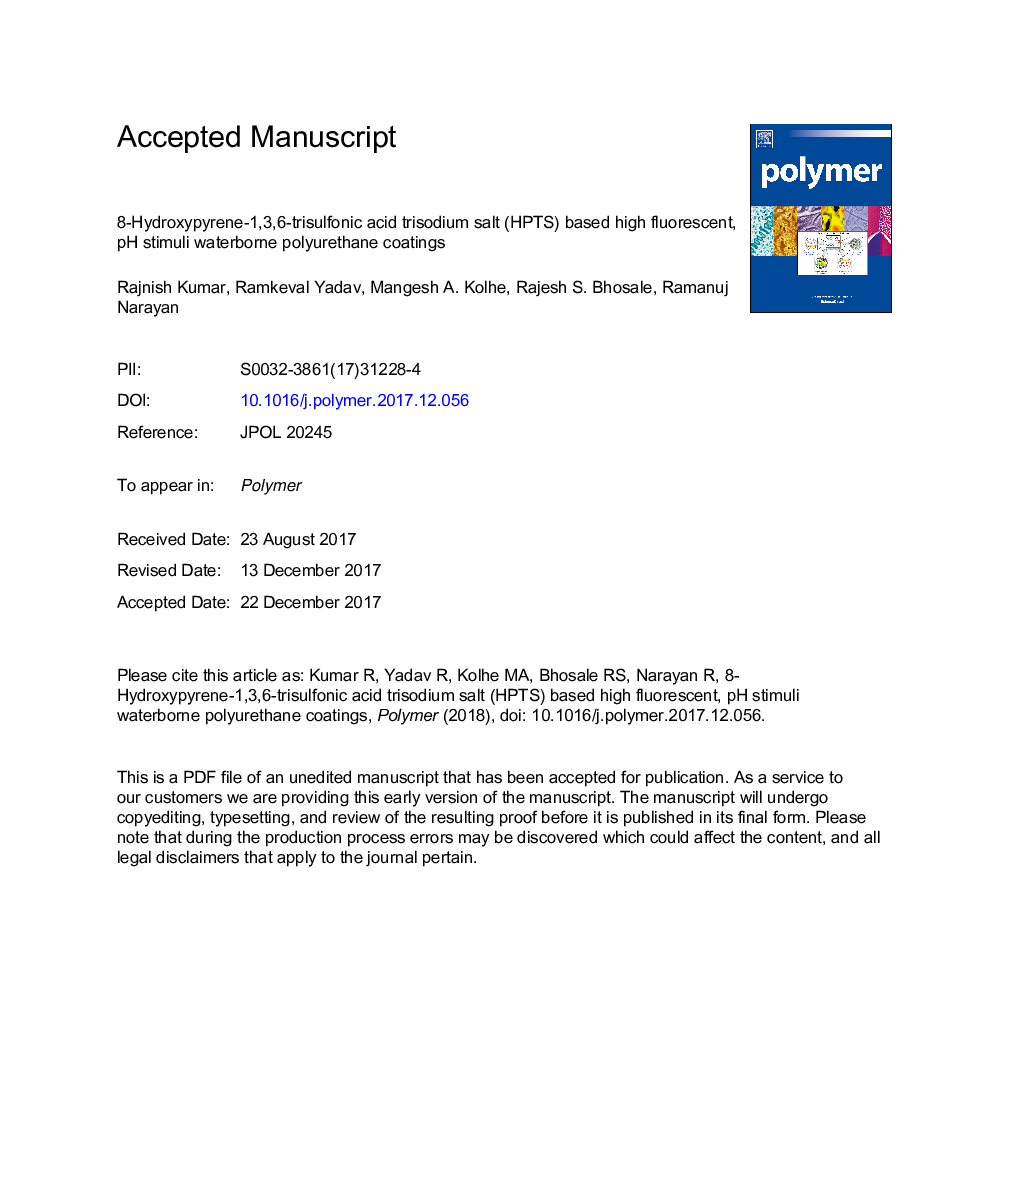 8-Hydroxypyrene-1,3,6-trisulfonic acid trisodium salt (HPTS) based high fluorescent, pH stimuli waterborne polyurethane coatings